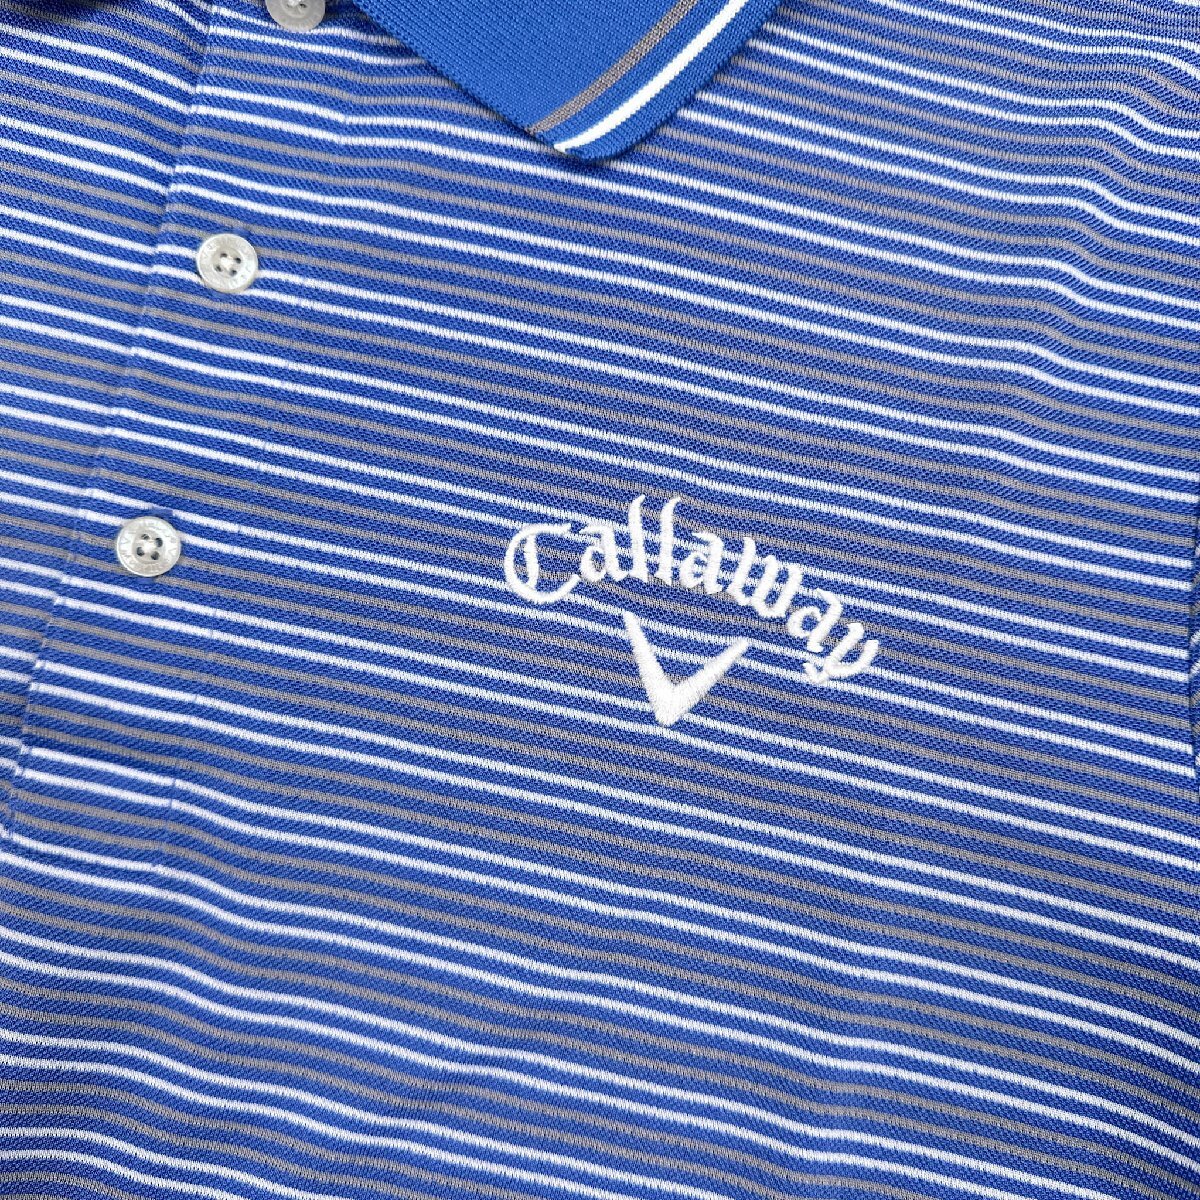 Callaway classic キャロウェイ ボーダー 半袖 ポロシャツ サイズ LL/ブルー 系 メンズ スポーツ ゴルフ 大きいサイズ_画像3